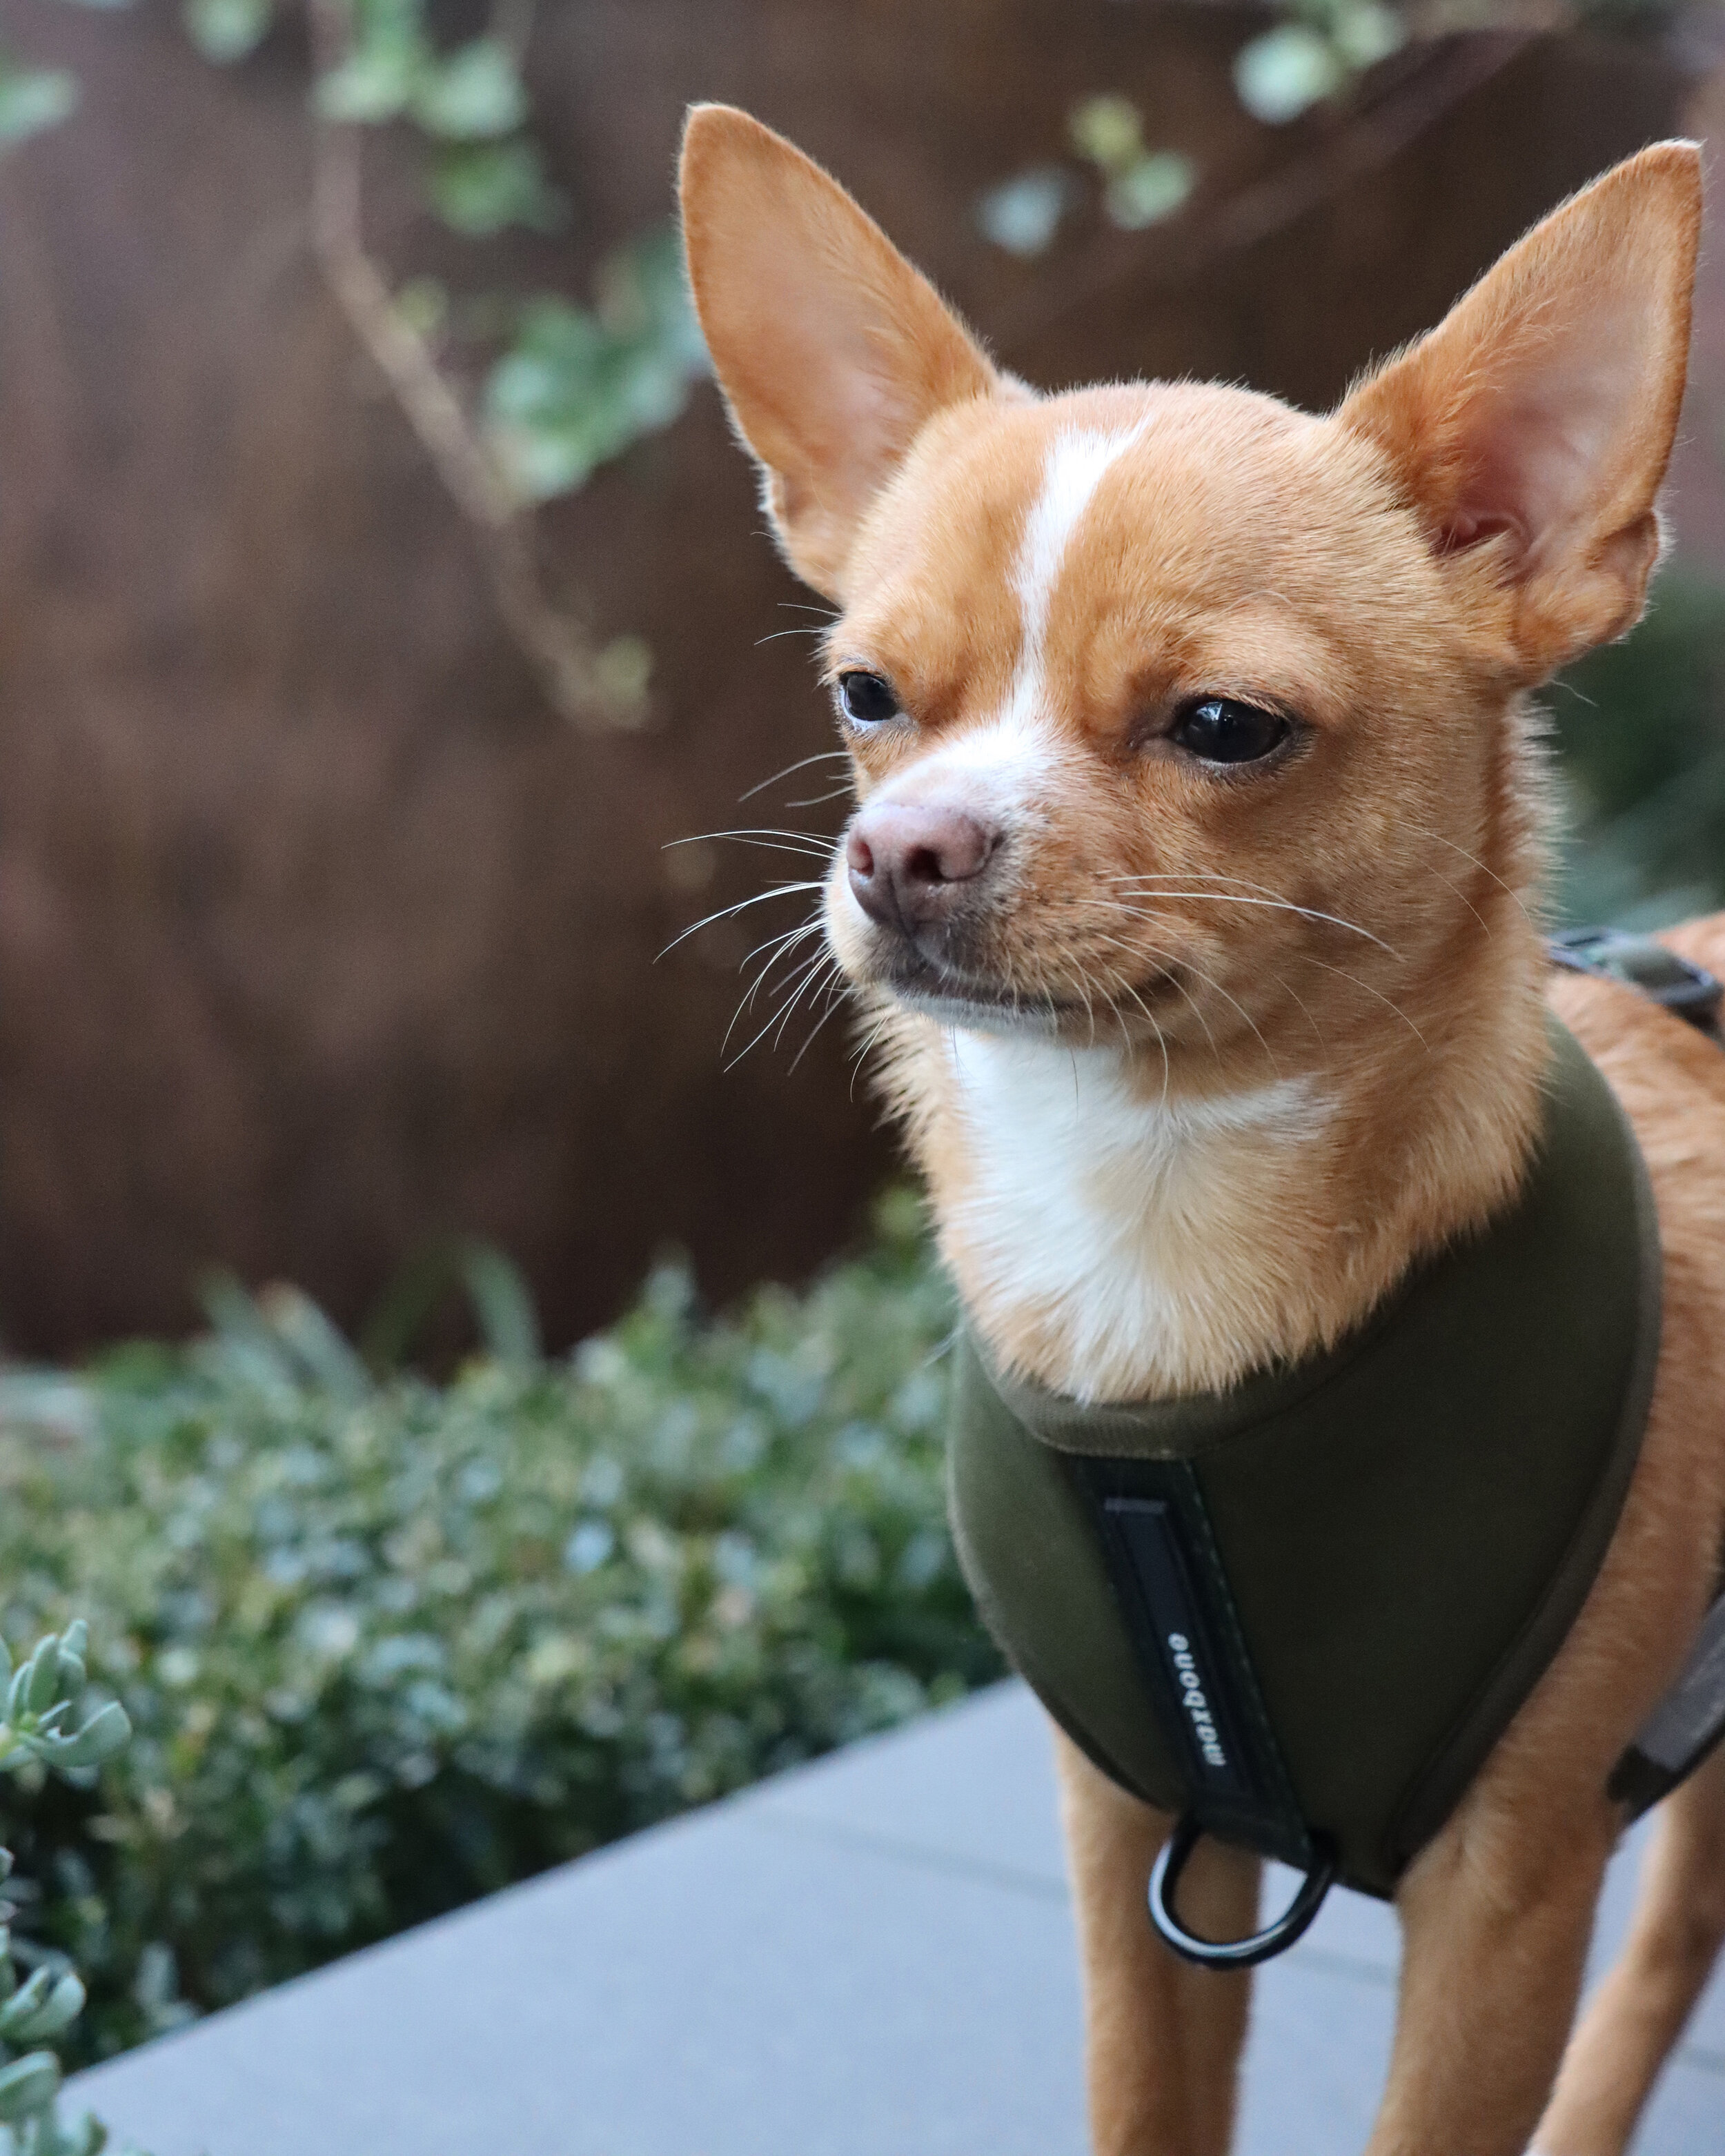 Eddie the Chihuahua